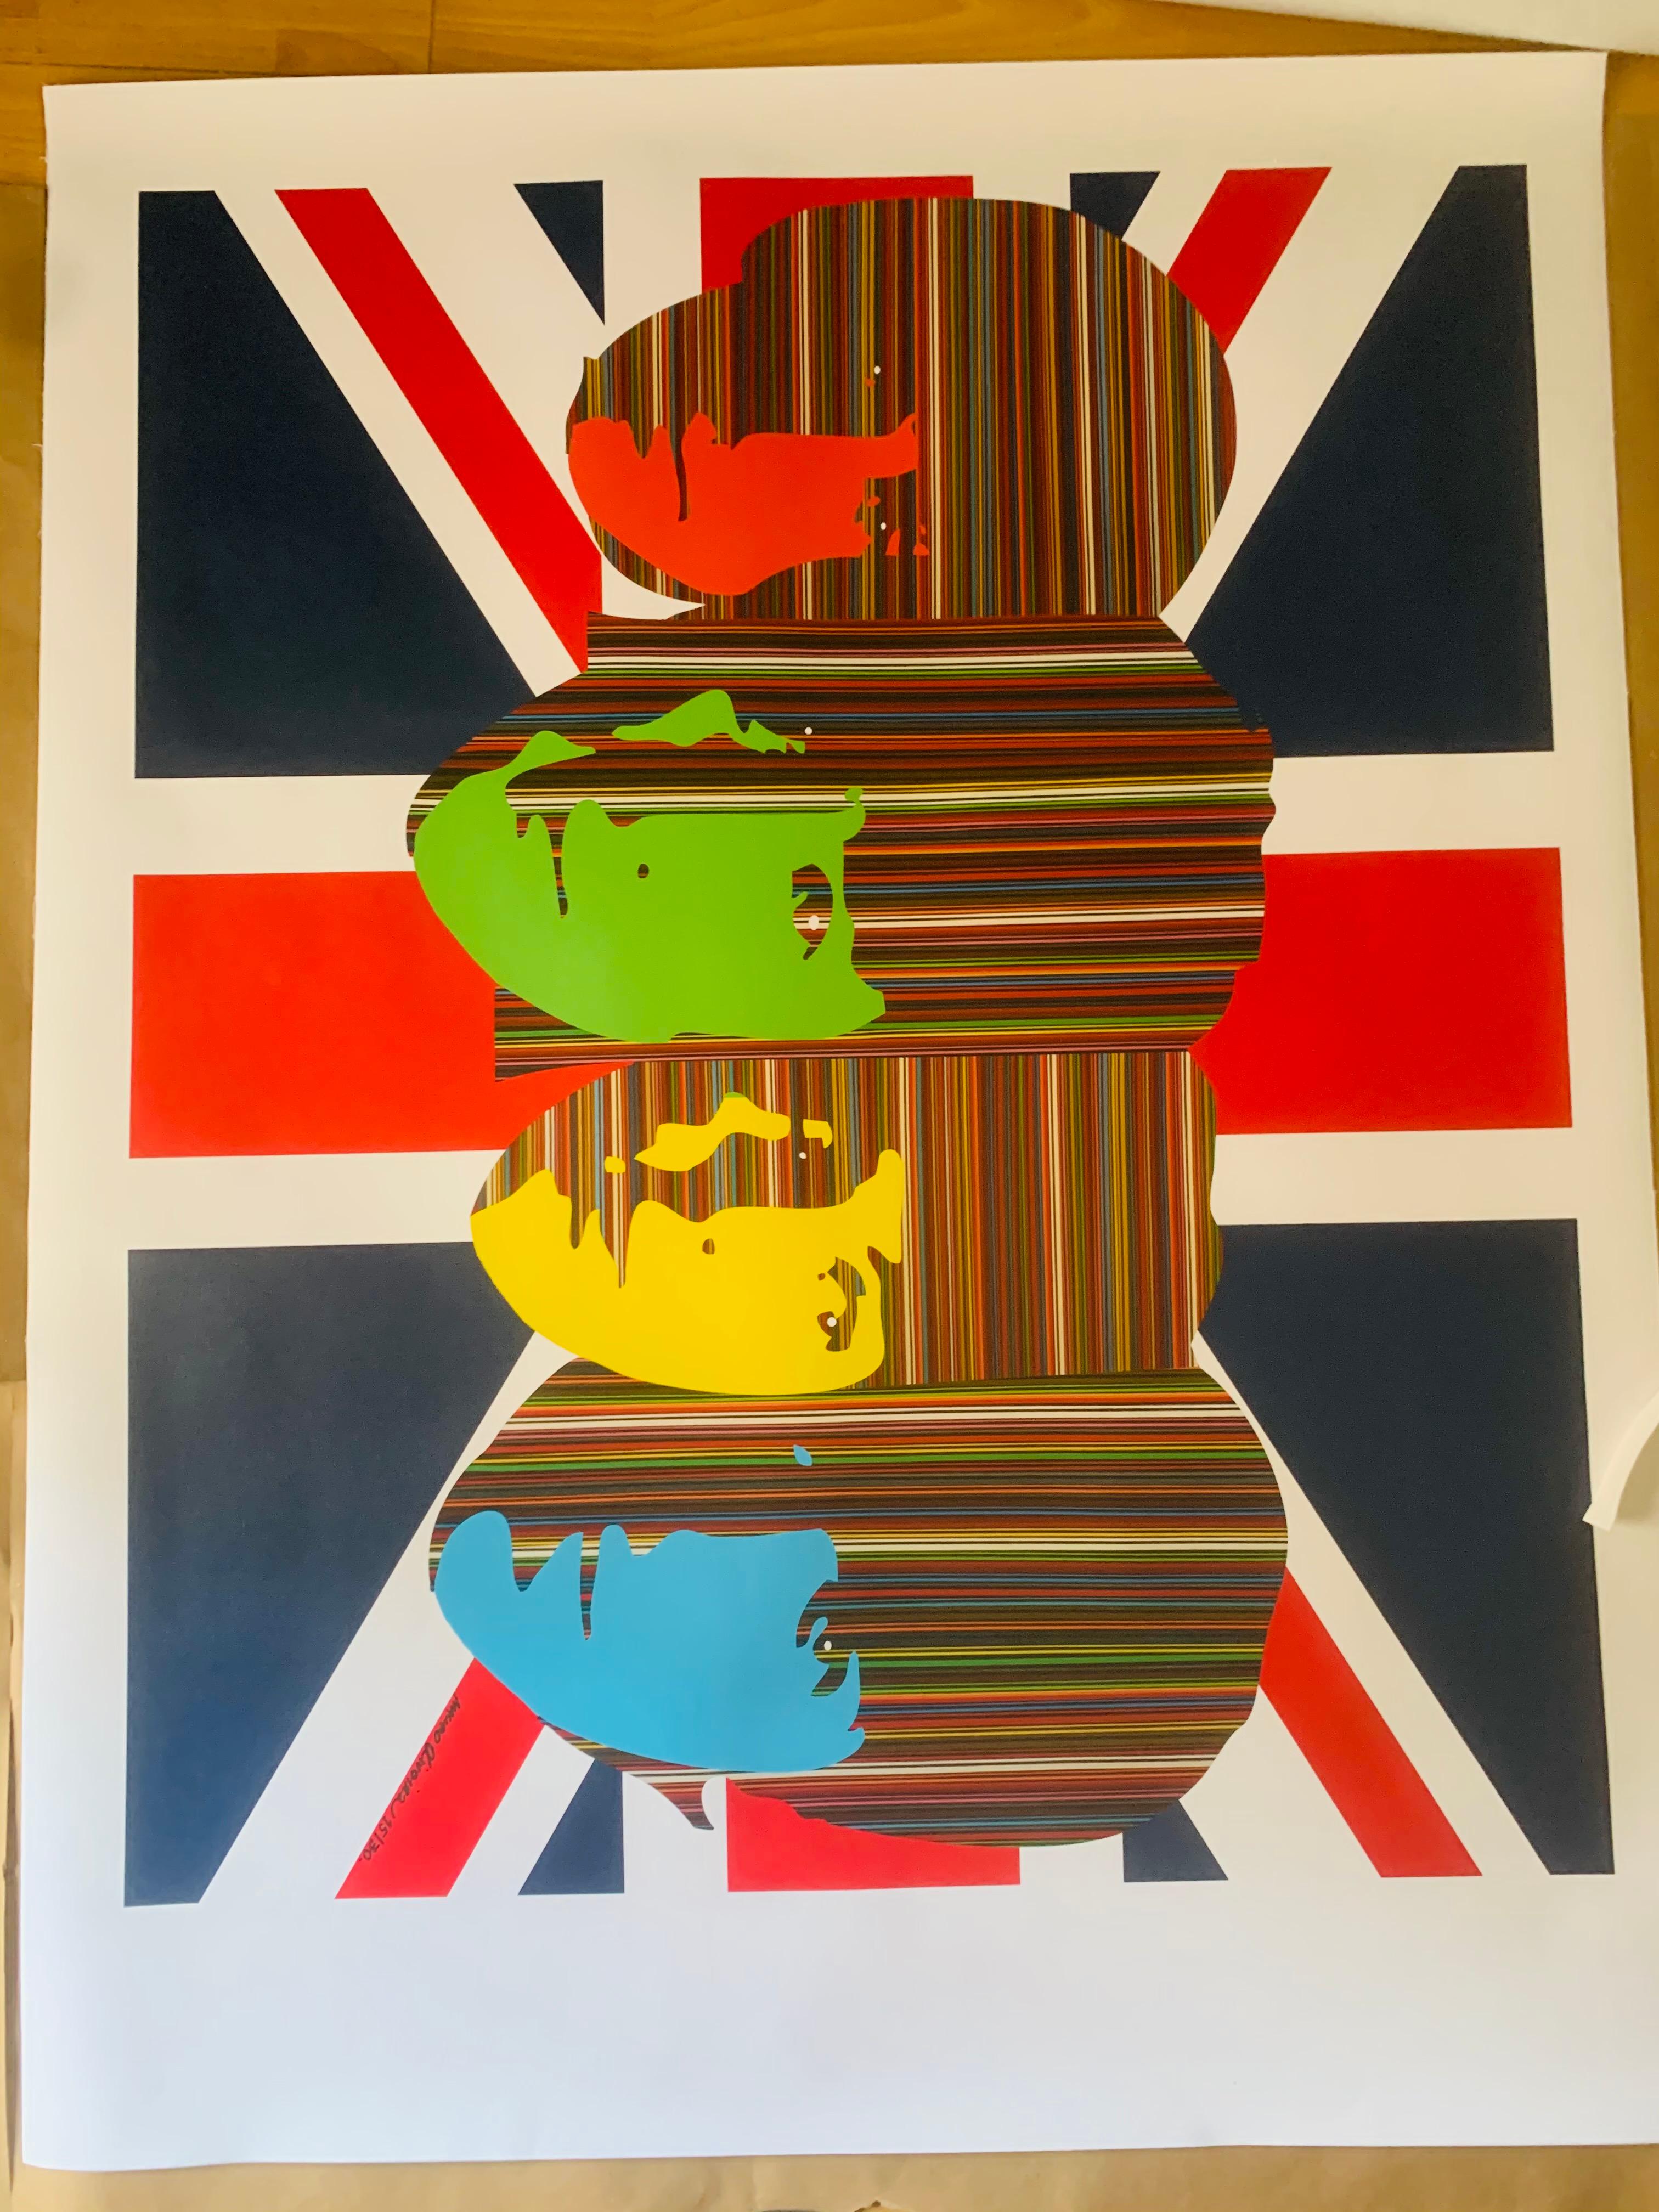 Alles, was wir brauchen, ist Liebe – britische Flaggenversion (imitierte Auflage von nur 30 Drucken) (Pop-Art), Print, von Mauro Oliveira